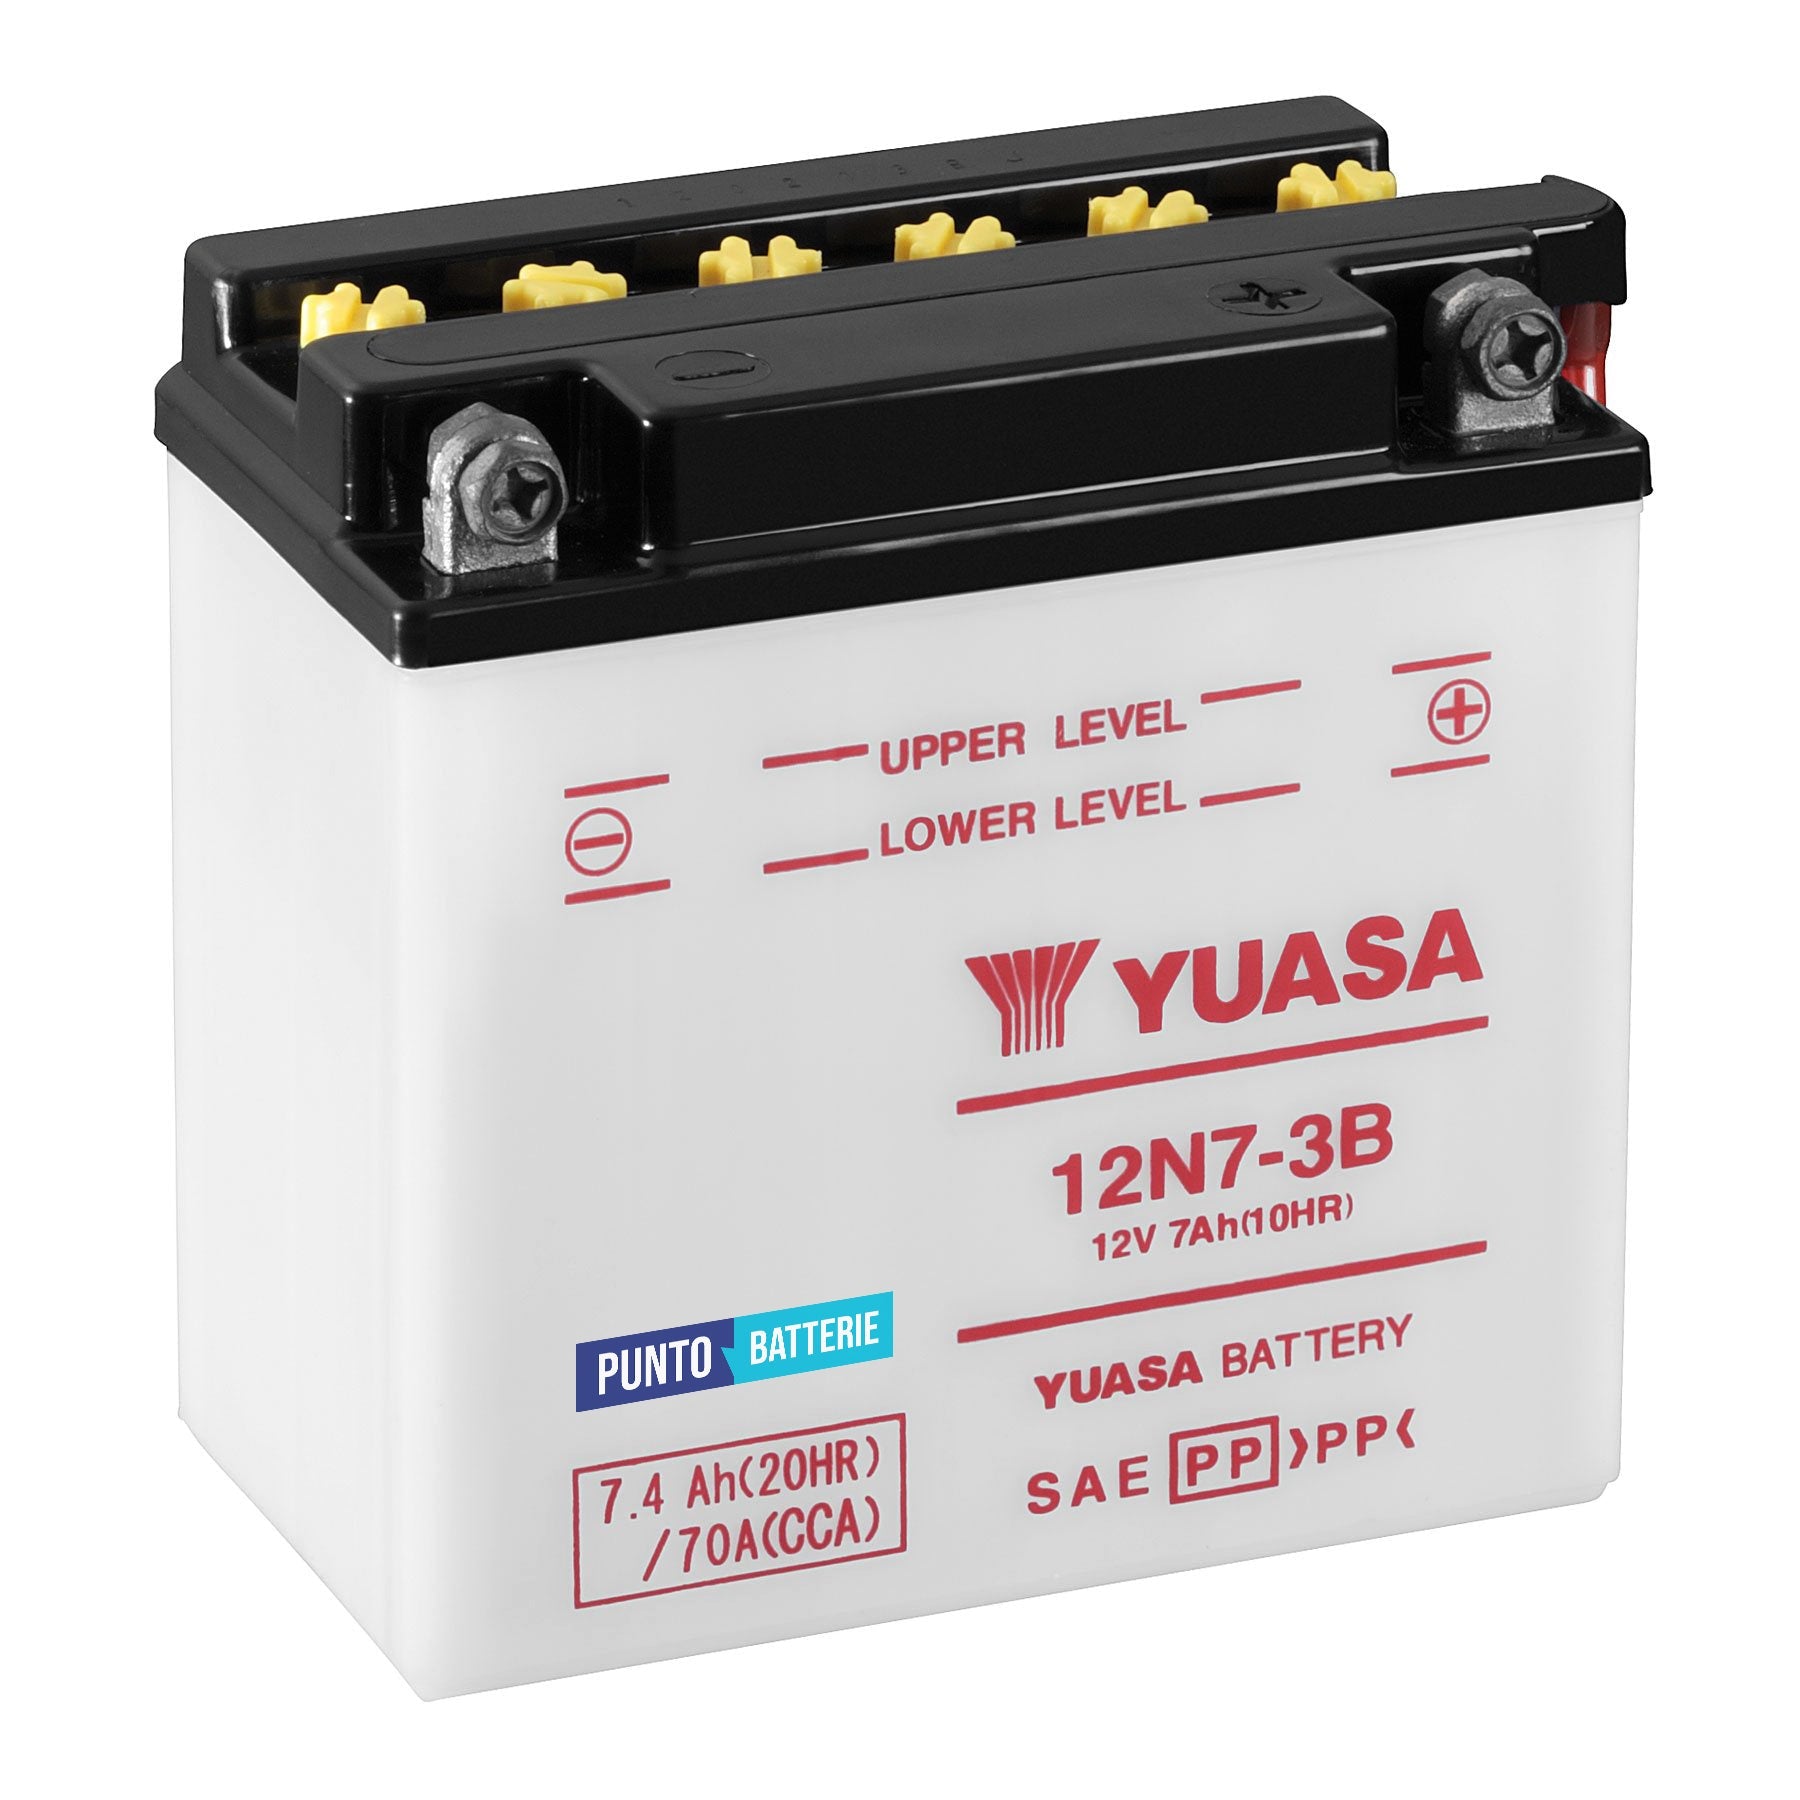 Batteria originale Yuasa Conventional 12N7-3B, dimensioni 135 x 75 x 133, polo positivo a destra, 12 volt, 7 amperora, 70 ampere. Batteria per moto, scooter e powersport.